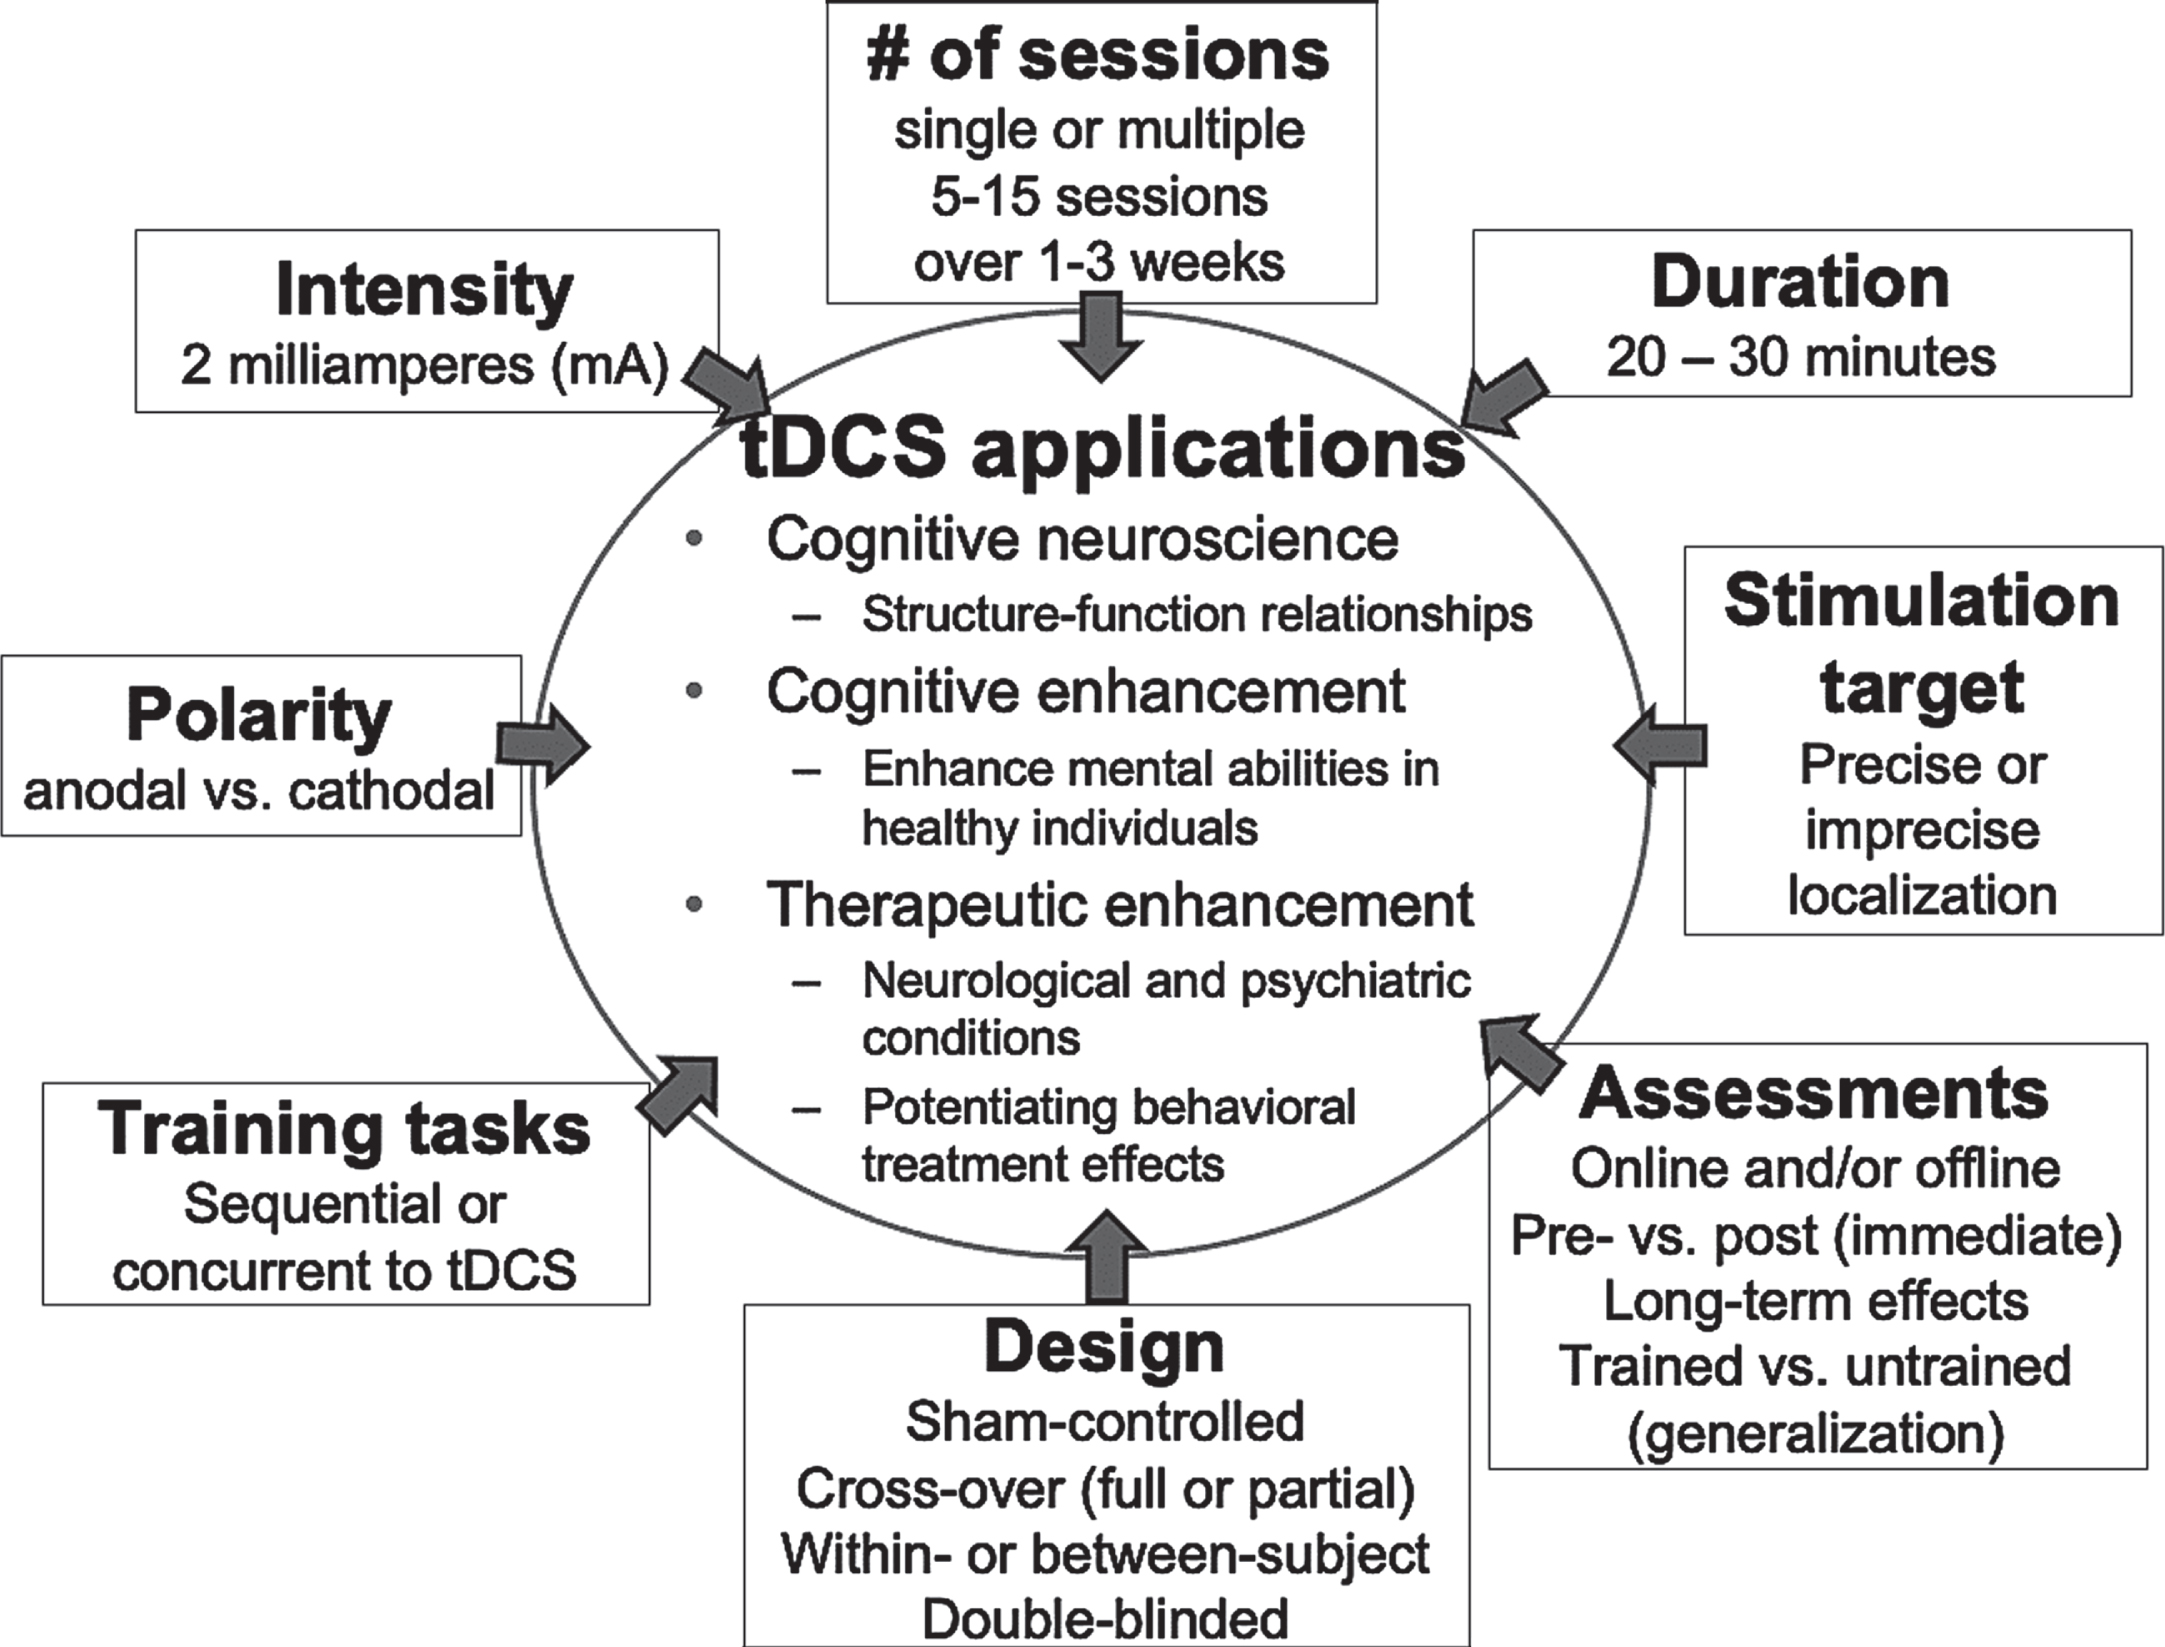 Parameter and design characteristics involving tDCS treatment studies.